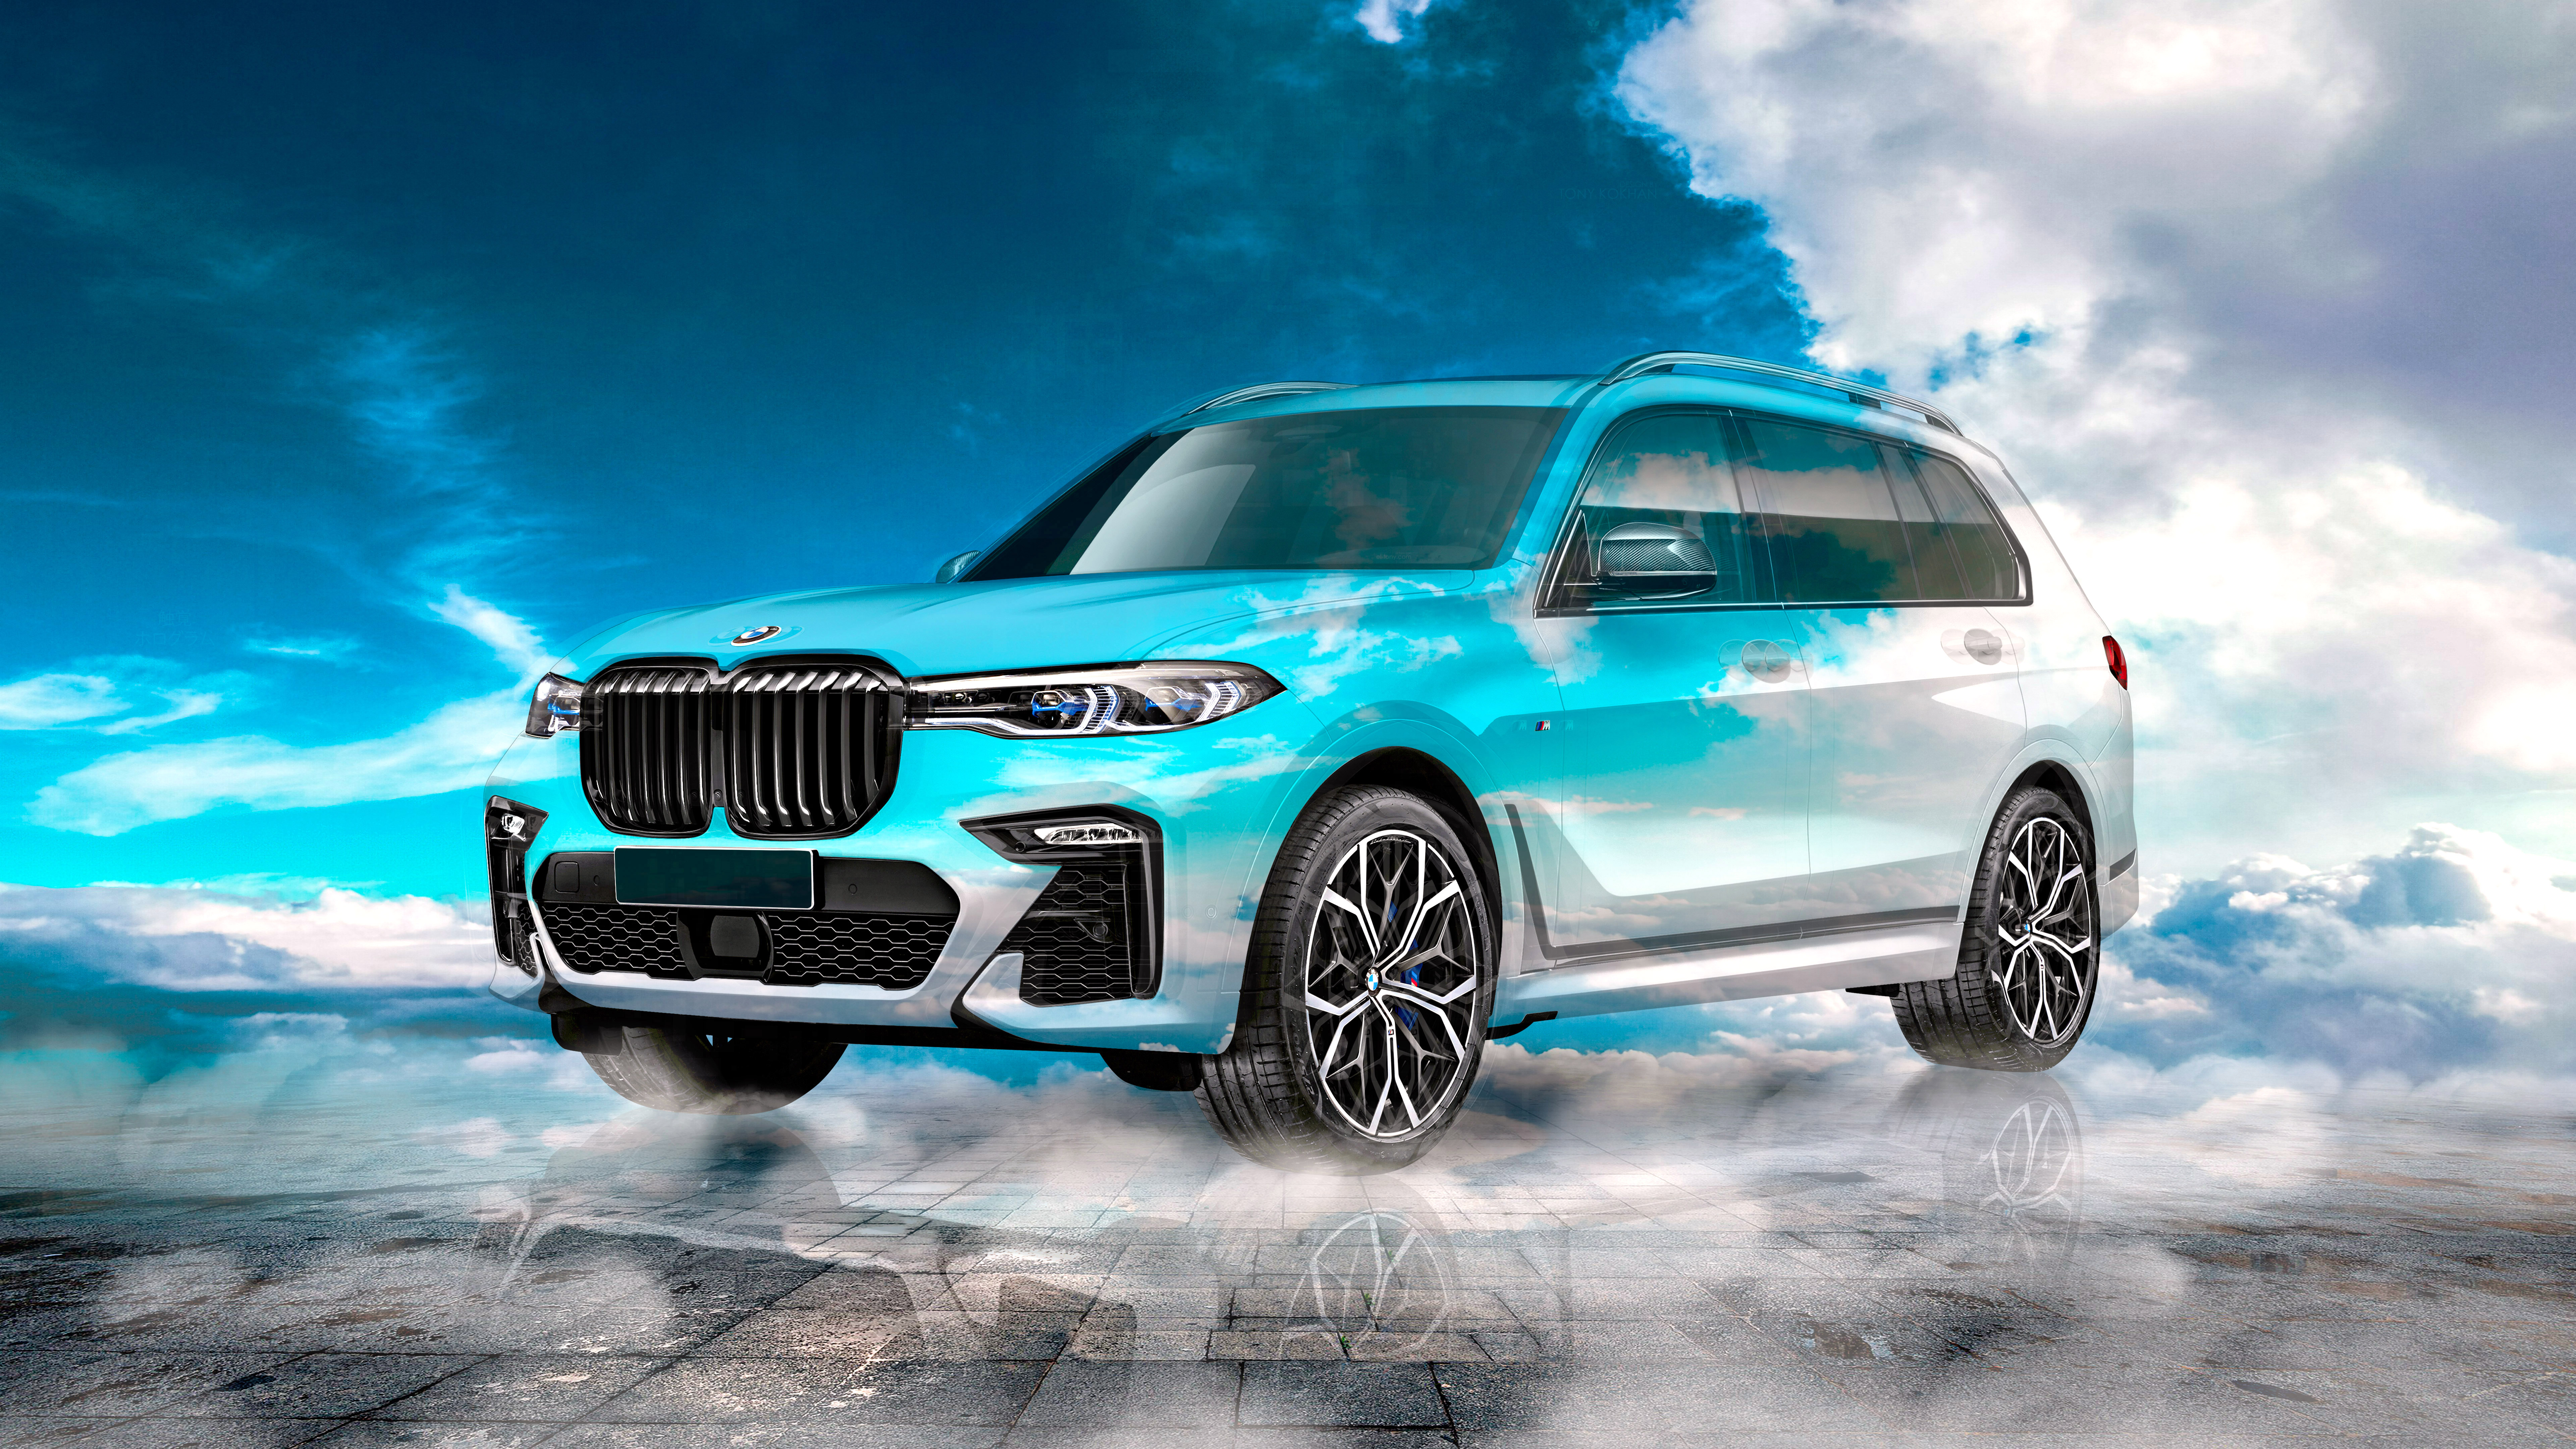 BMW-X7M-Super-Crystal-God-Soul-Sky-Seventh-Heaven-Tactile-Hologram-Art-Car